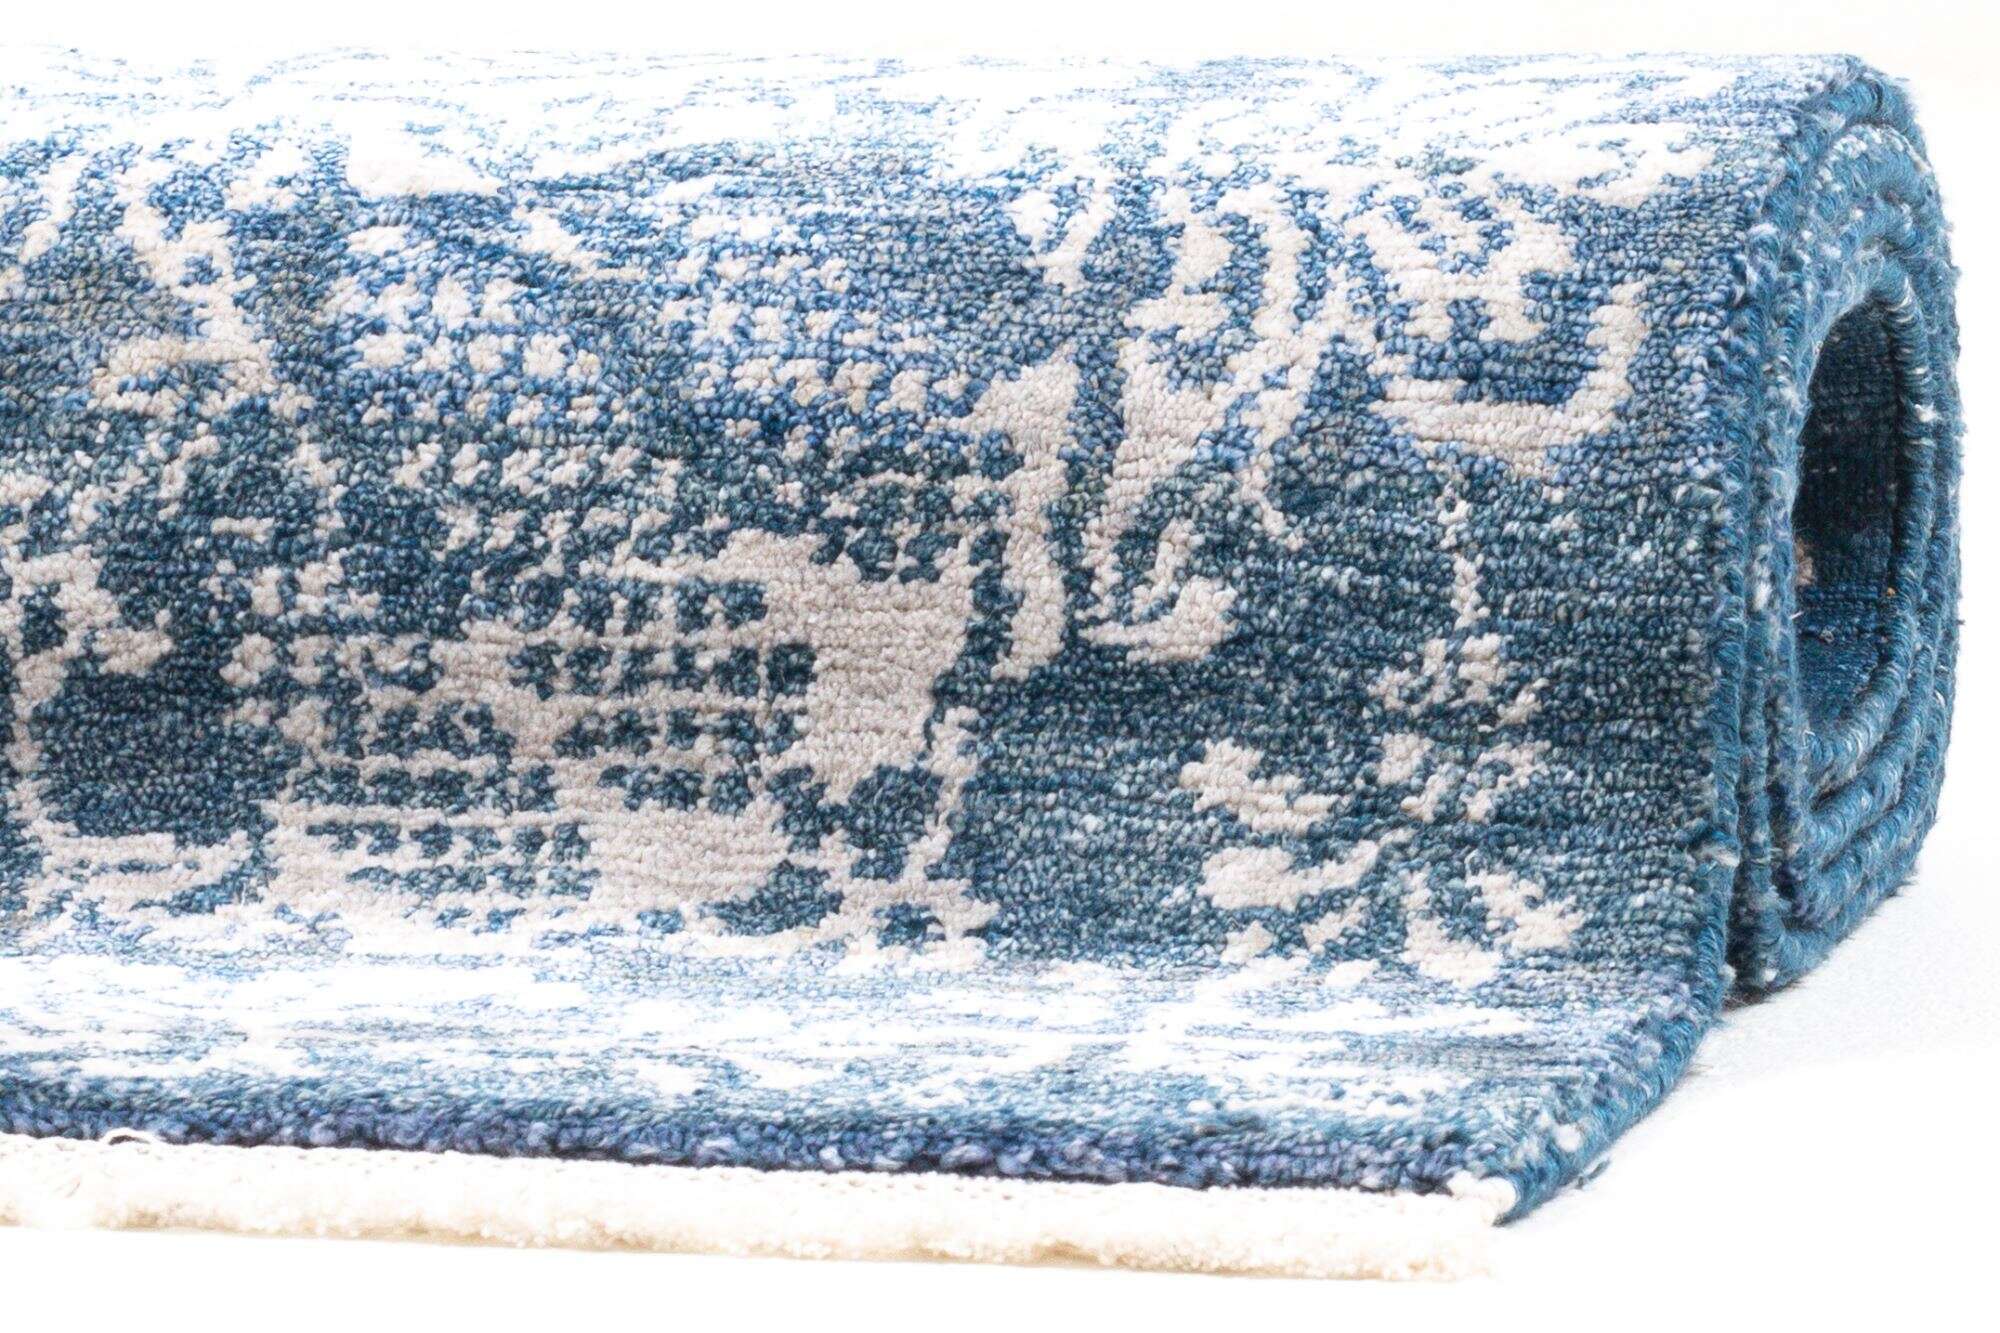 Vintage Teppich Queensland 160x230cm Handgeknüpft Viskose blau